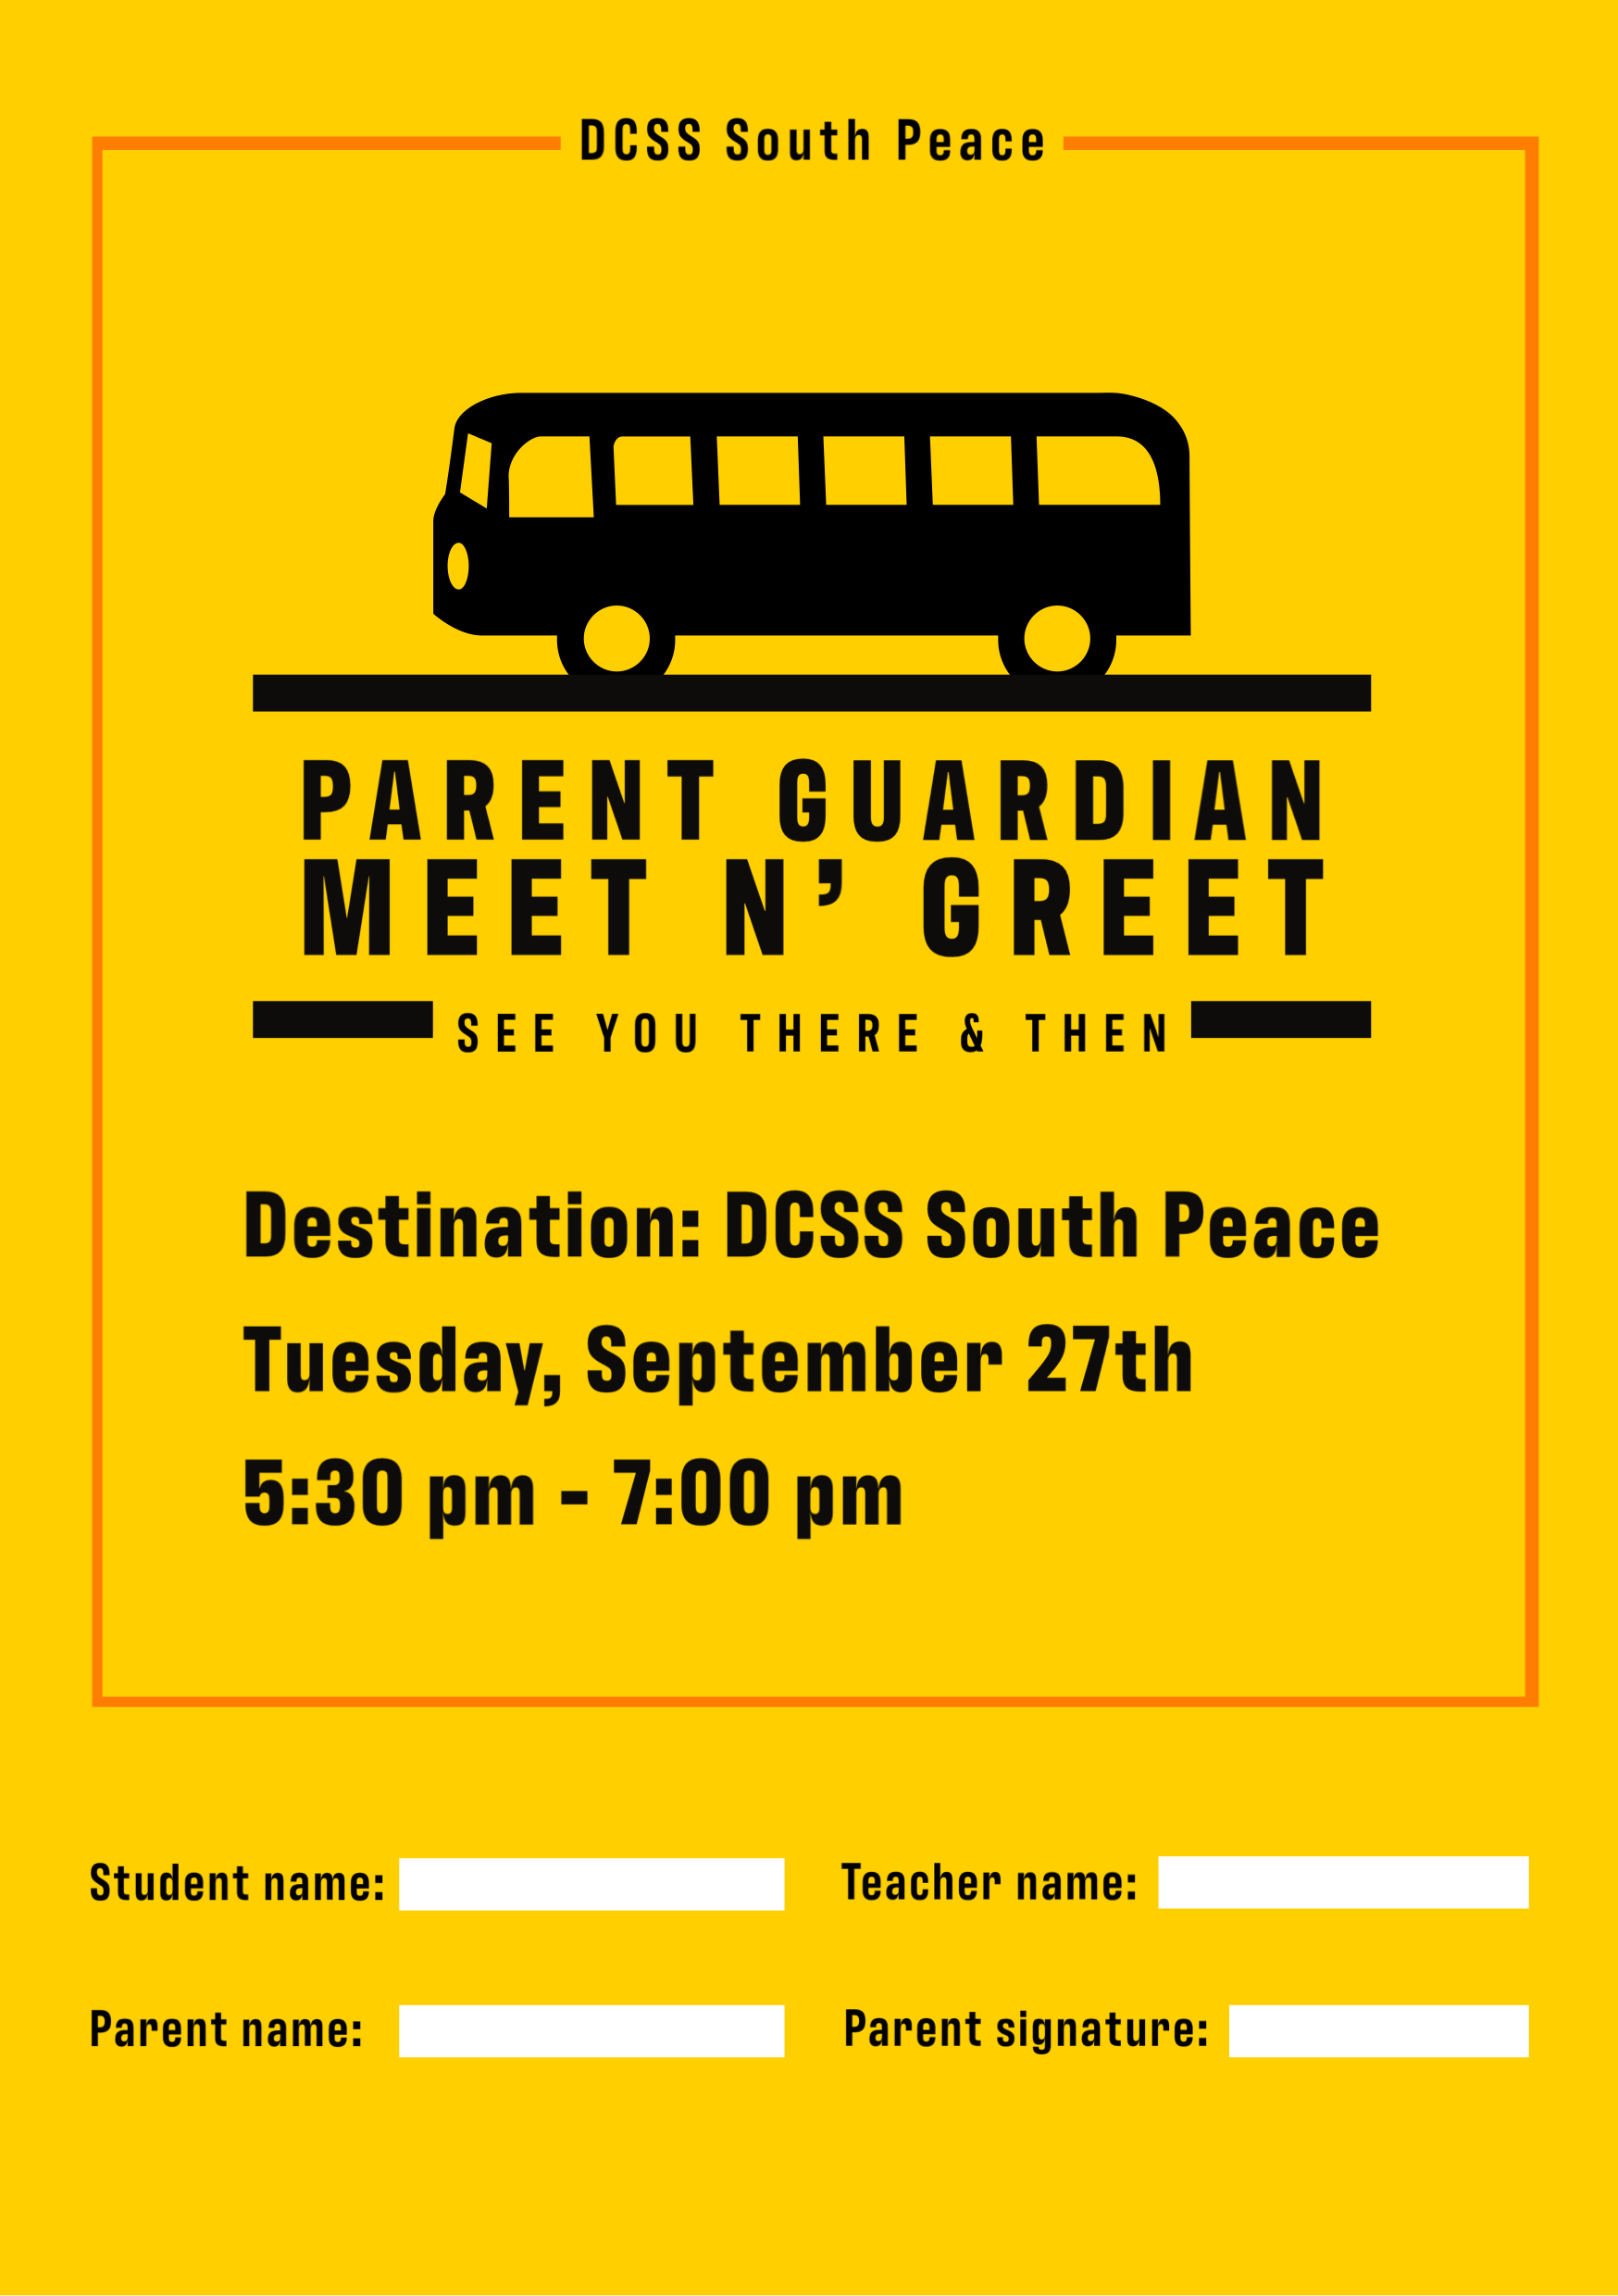 Parent Guardian Meet n’ Greet: Tuesday, Sept. 27th